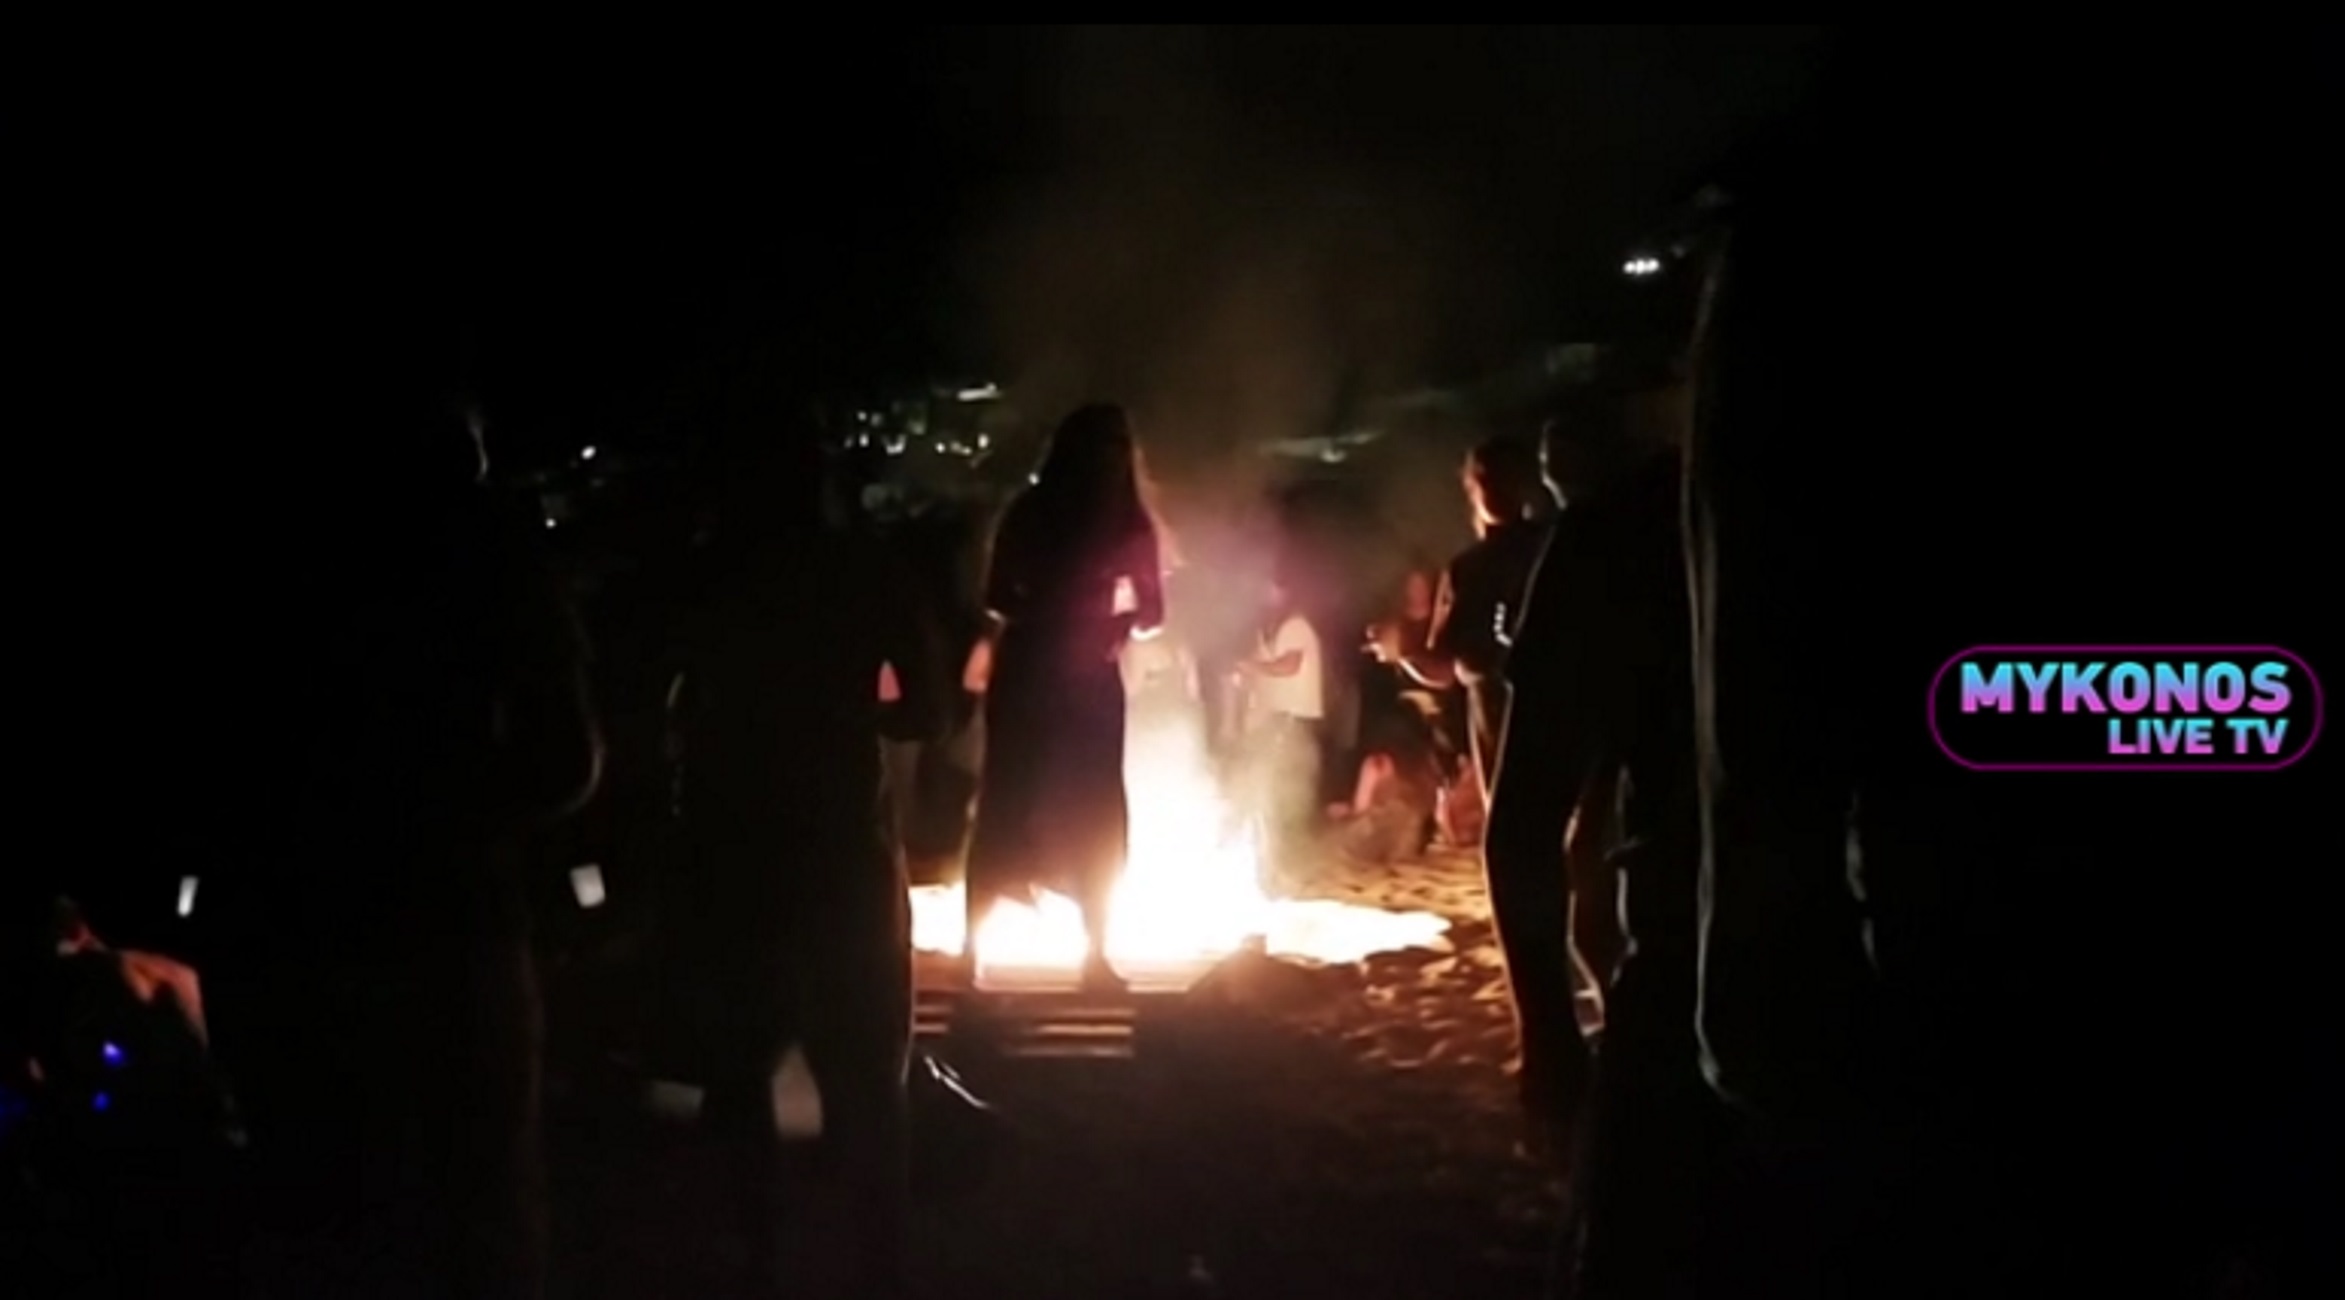 Μύκονος: Ξεσάλωμα σε μυστική τοποθεσία! Το πάρτι στην παραλία και η άφιξη της αστυνομίας (Βίντεο)